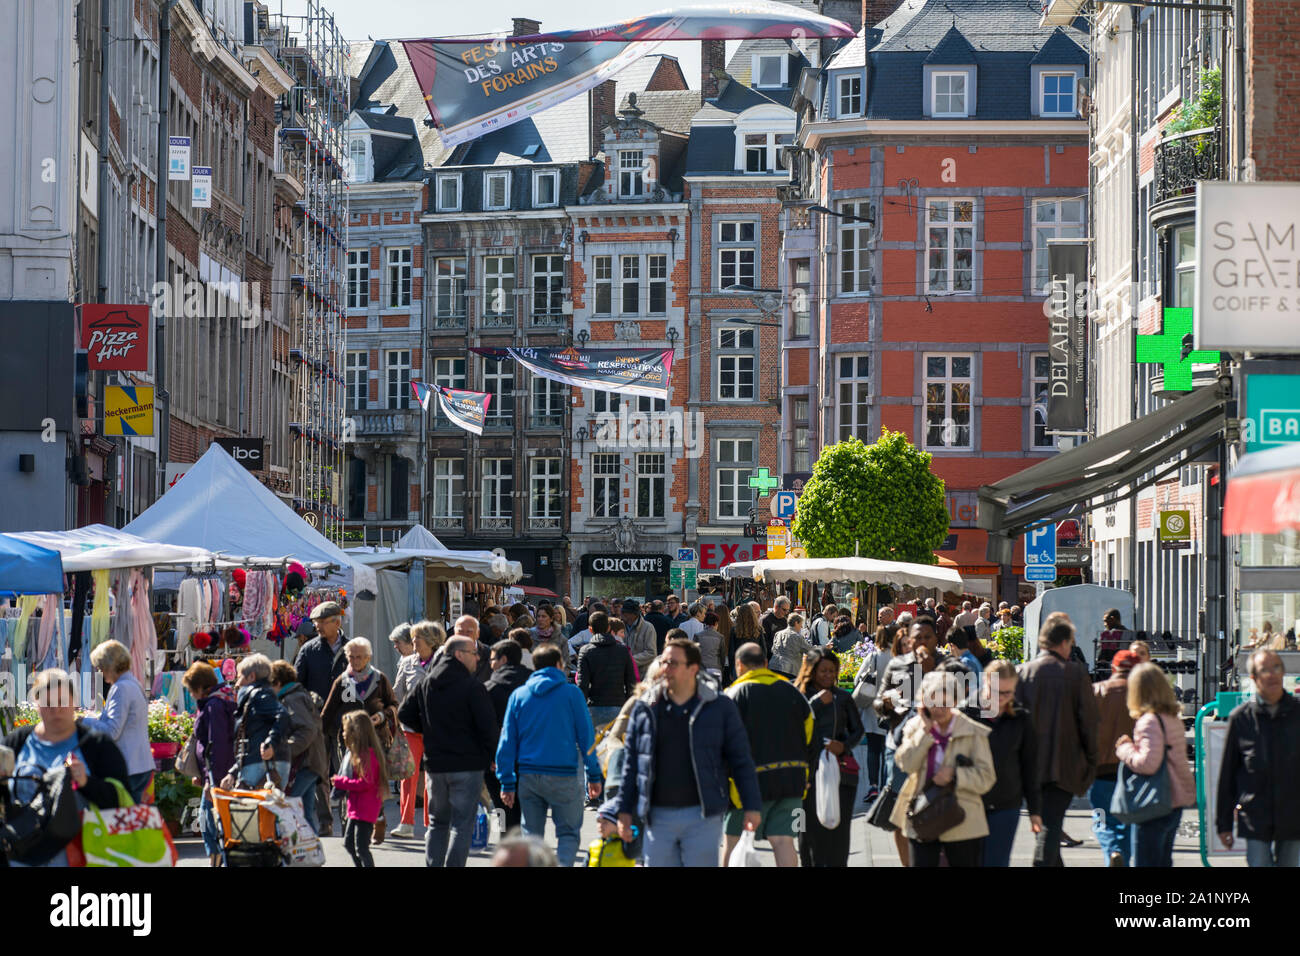 Markt in der Rue de Fer, Altstadt von Namur, Wallonien, Belgien  Stockfotografie - Alamy